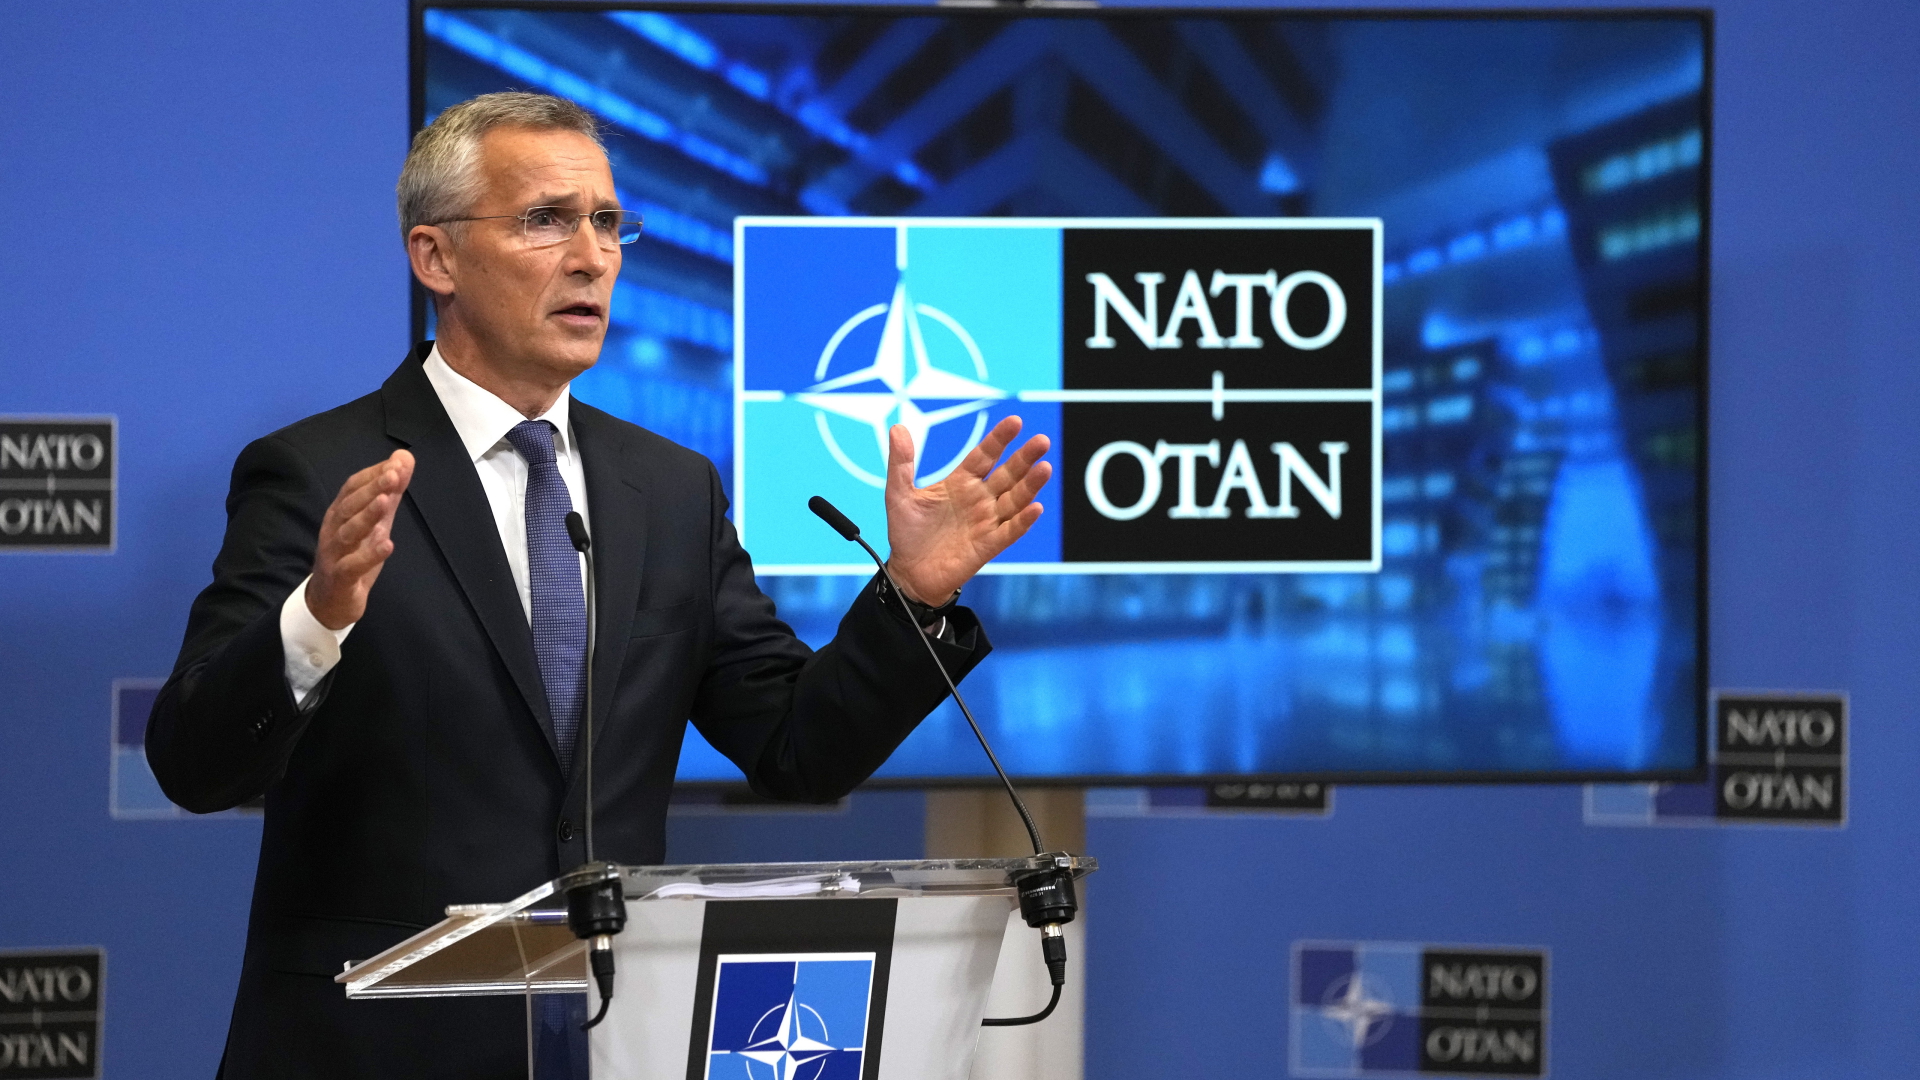 NATO-Generalsekretär Stoltenberg: "Die Ukraine entscheidet selbst über sich"